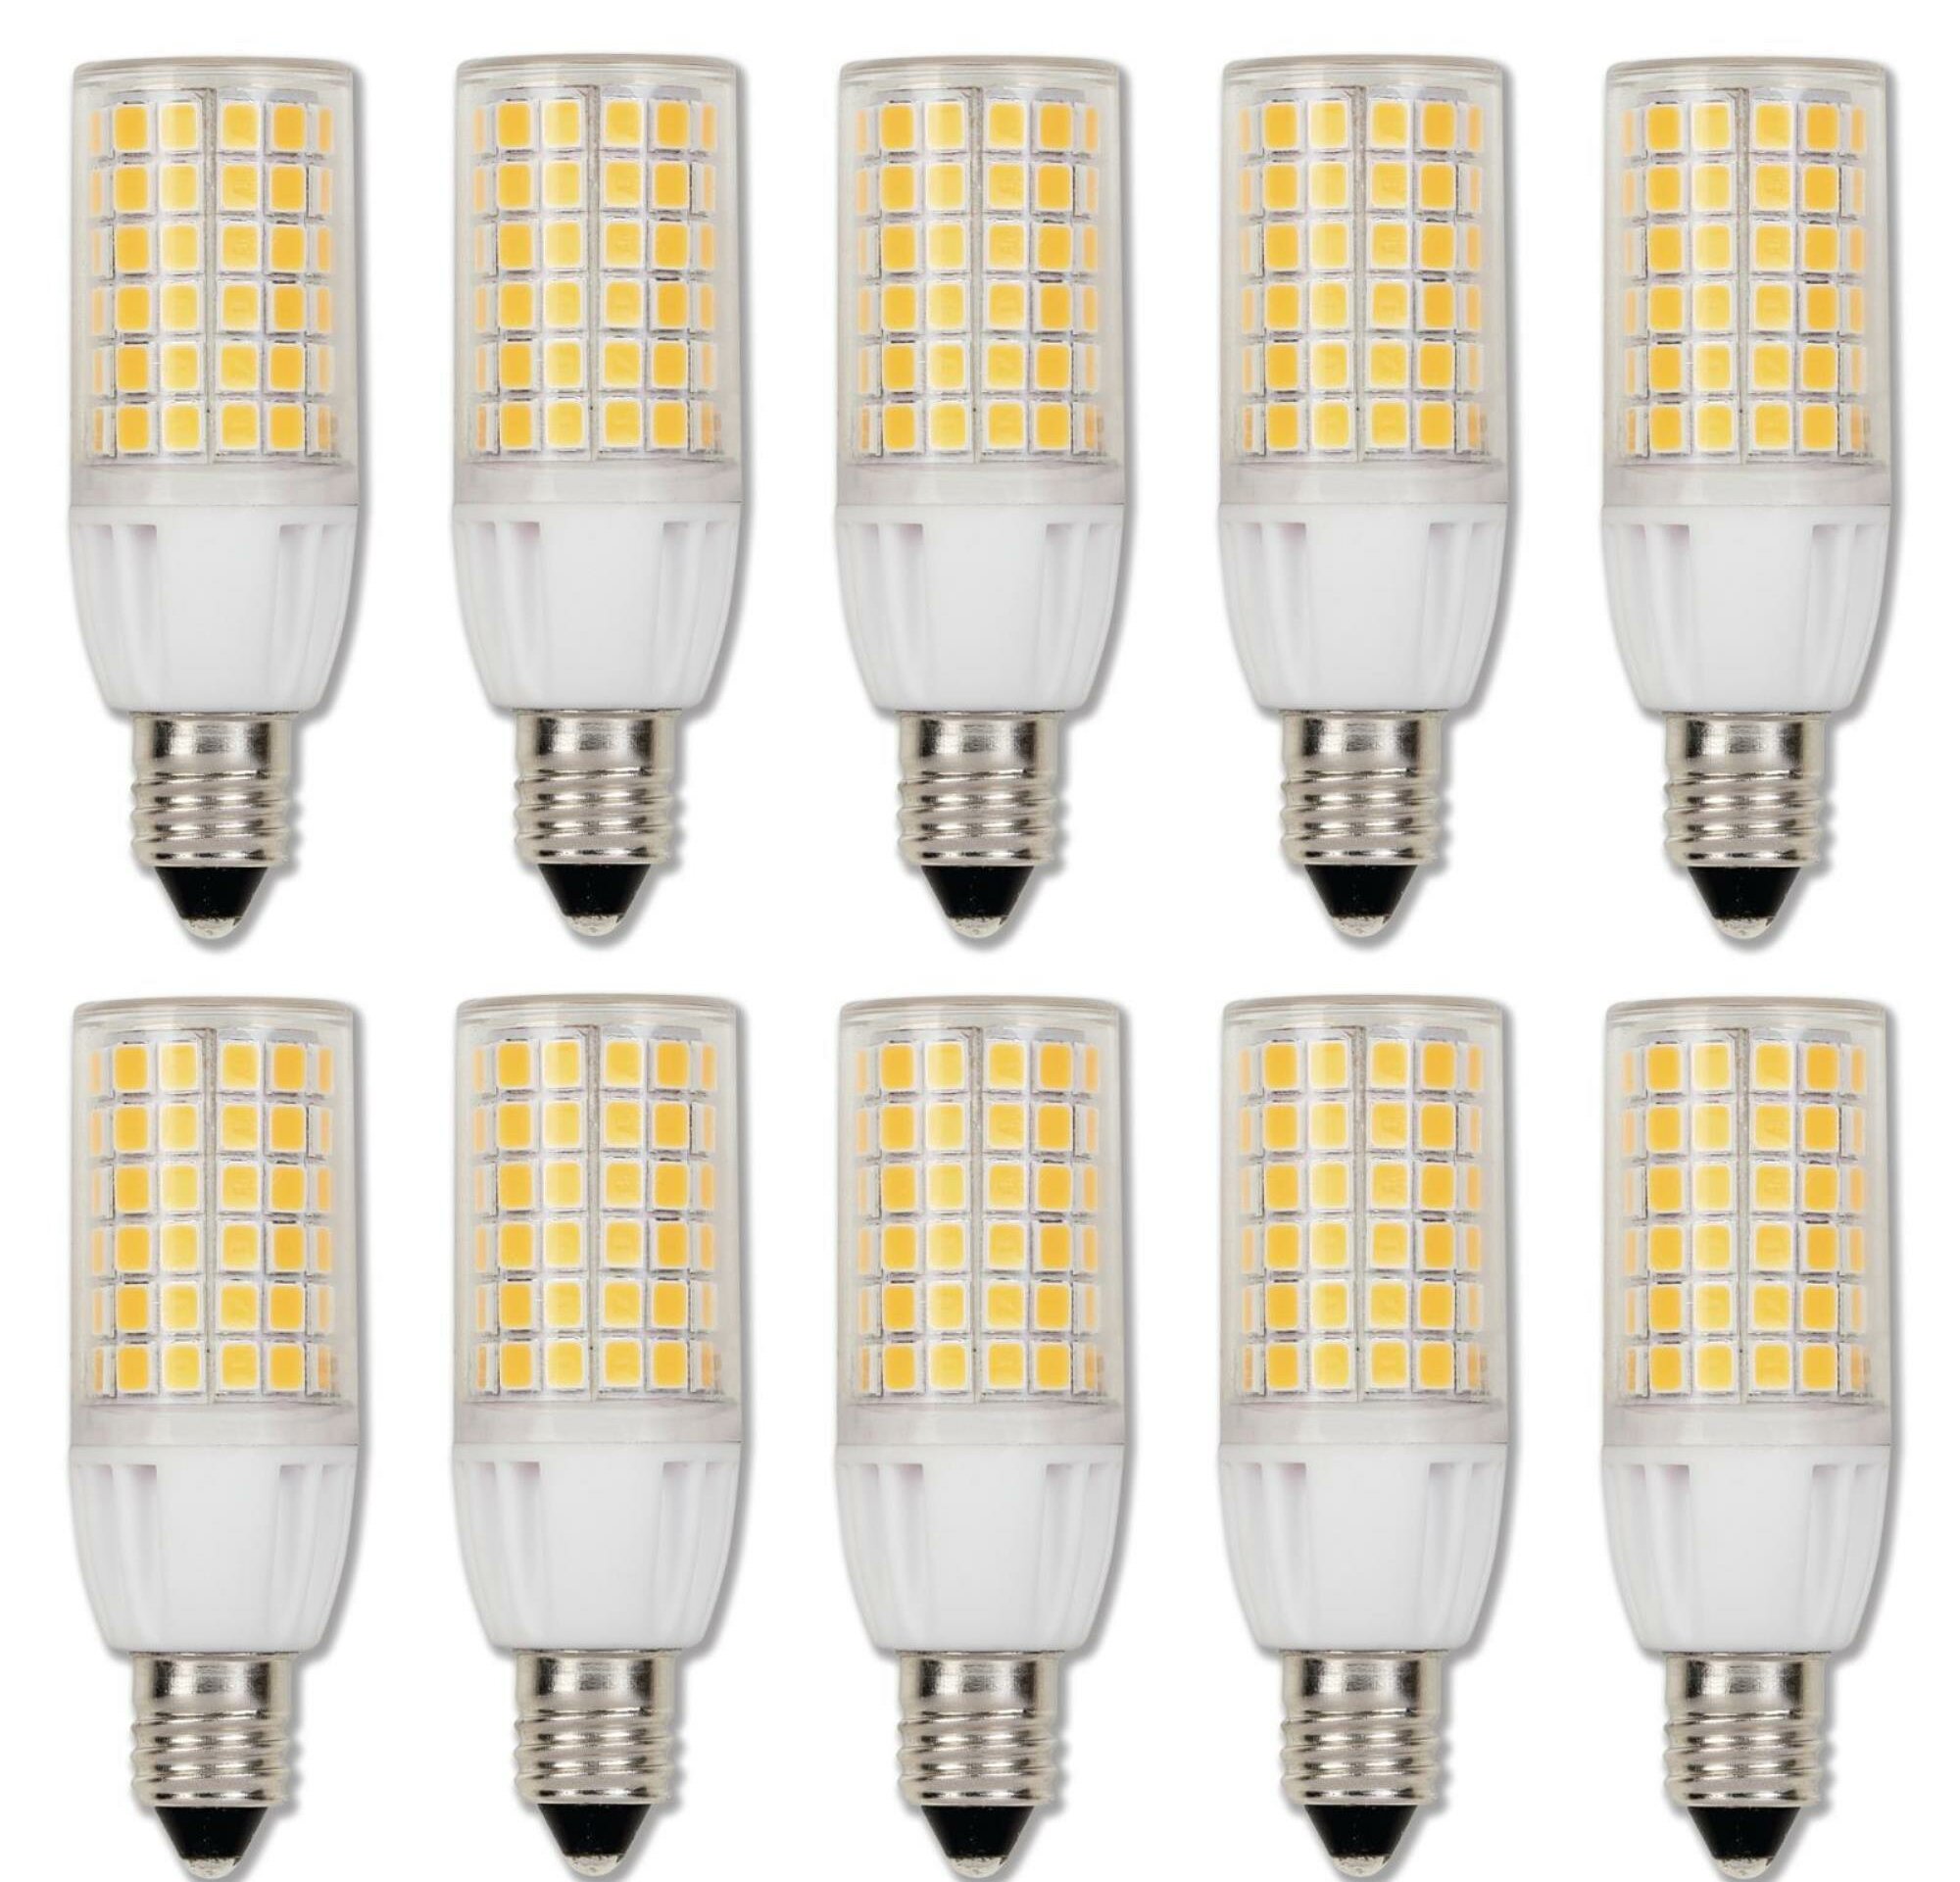 Mini Candelabra Base 75WHalogen Bulbs Equivalent 7W Pack of 2 Dimmable E11 LED Bulb Light 7 AC110V 120V 130V 3000K Warm White for Chandeliers Ceiling Fan Light 